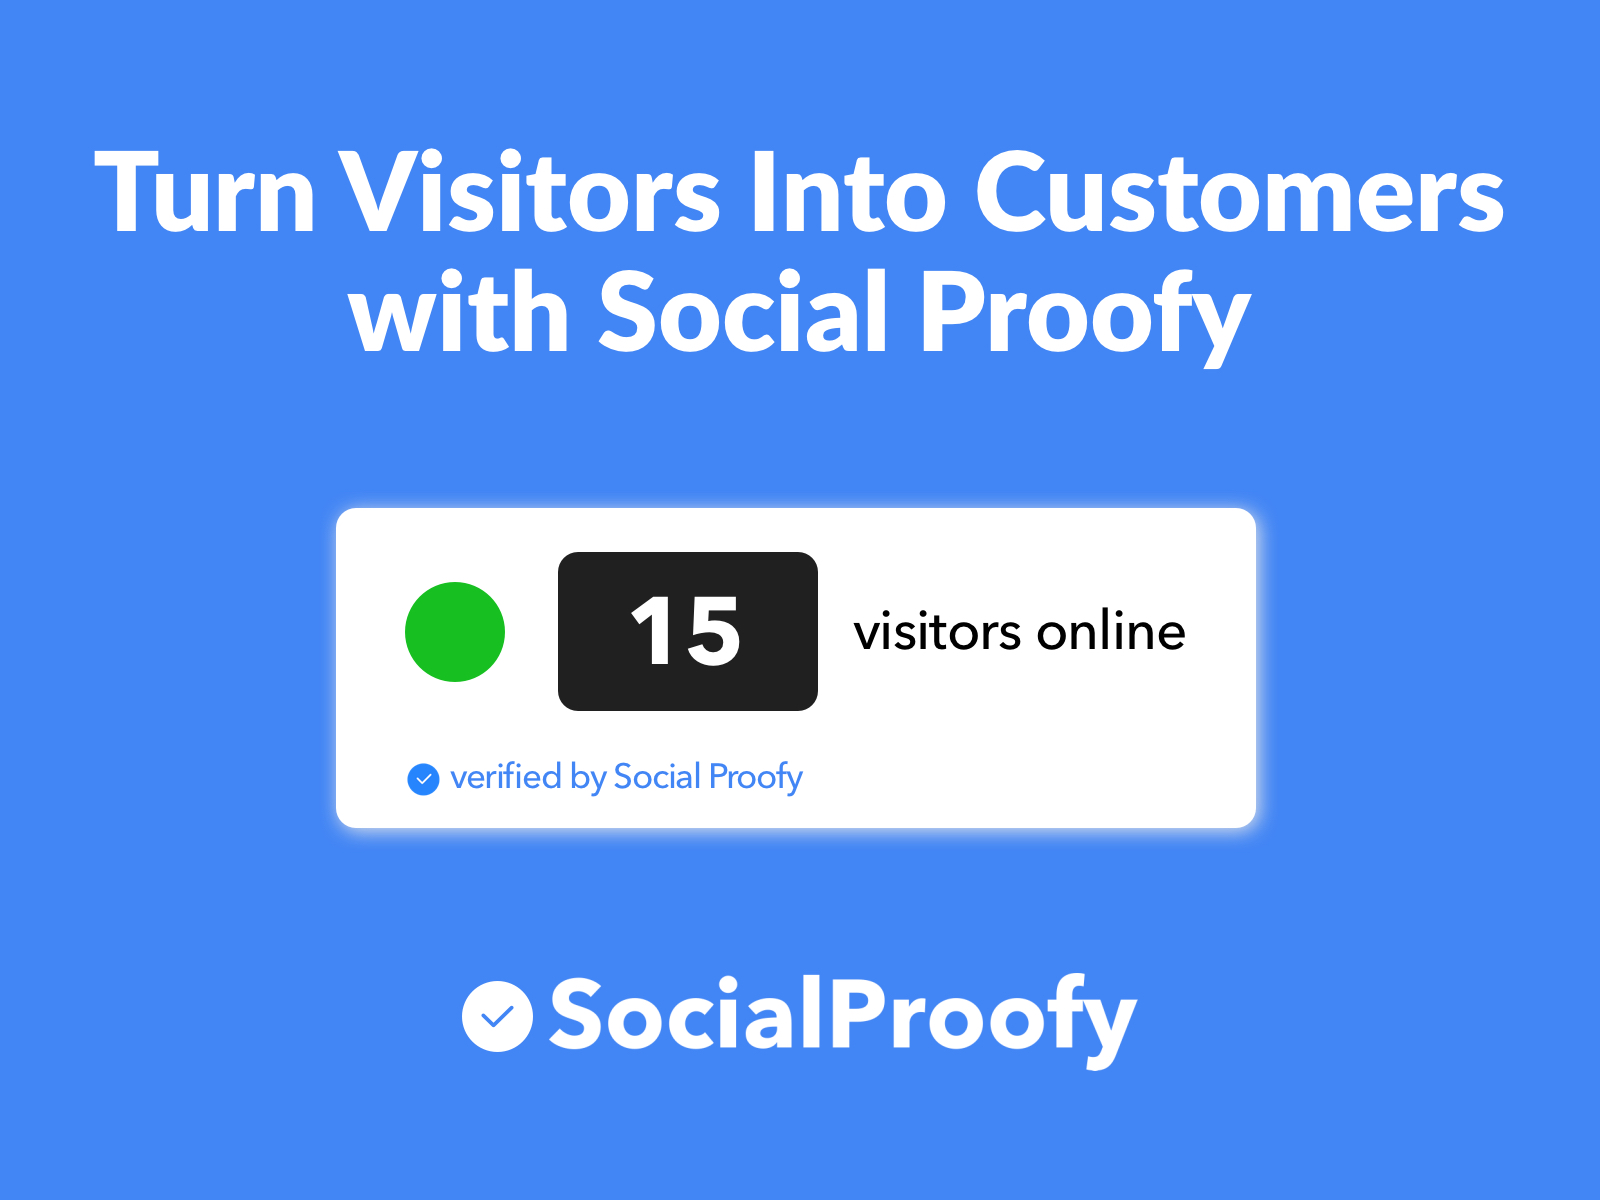 Social Proofy live visitors